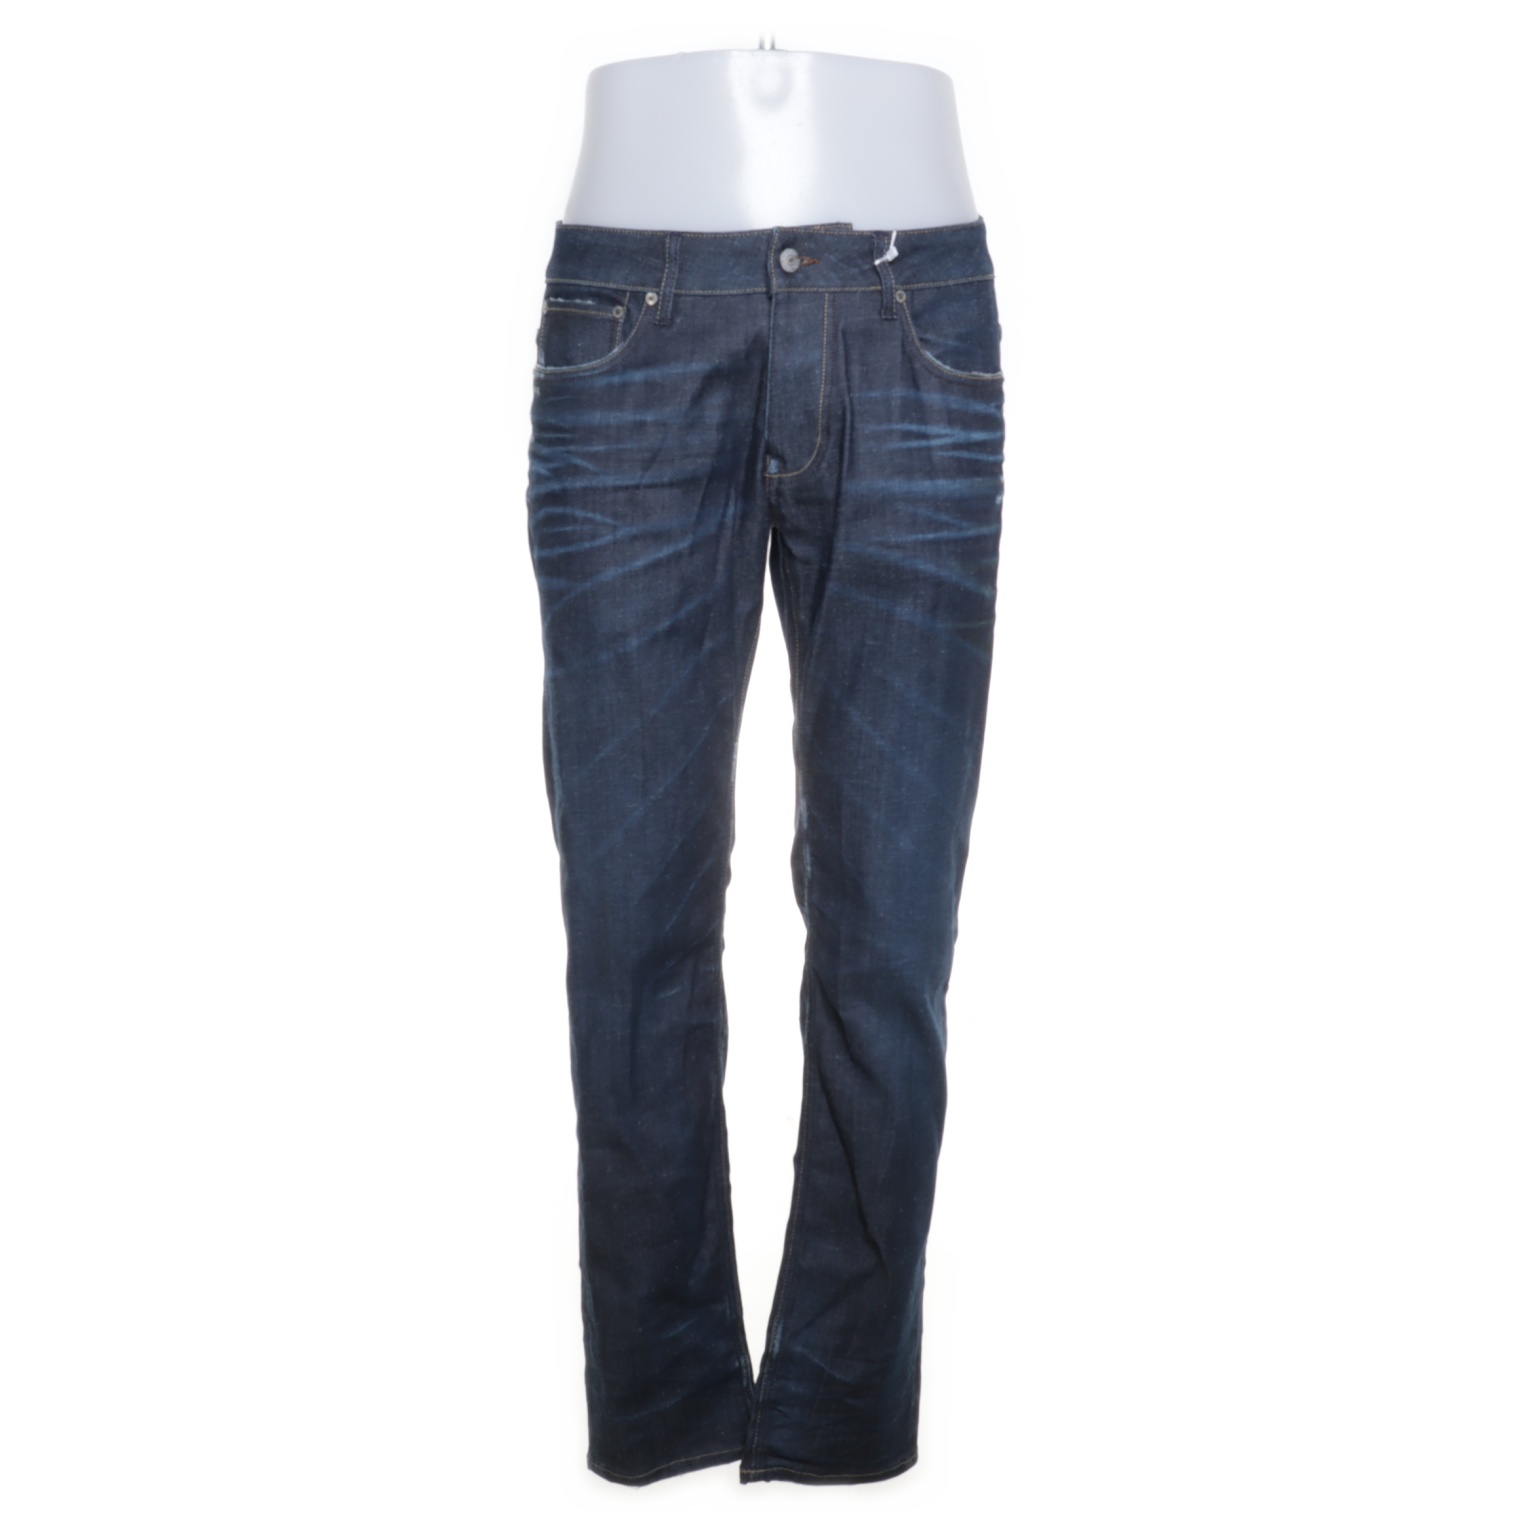 R.M. Williams - Jeans - Größe: 34 - Blau von R.M. Williams